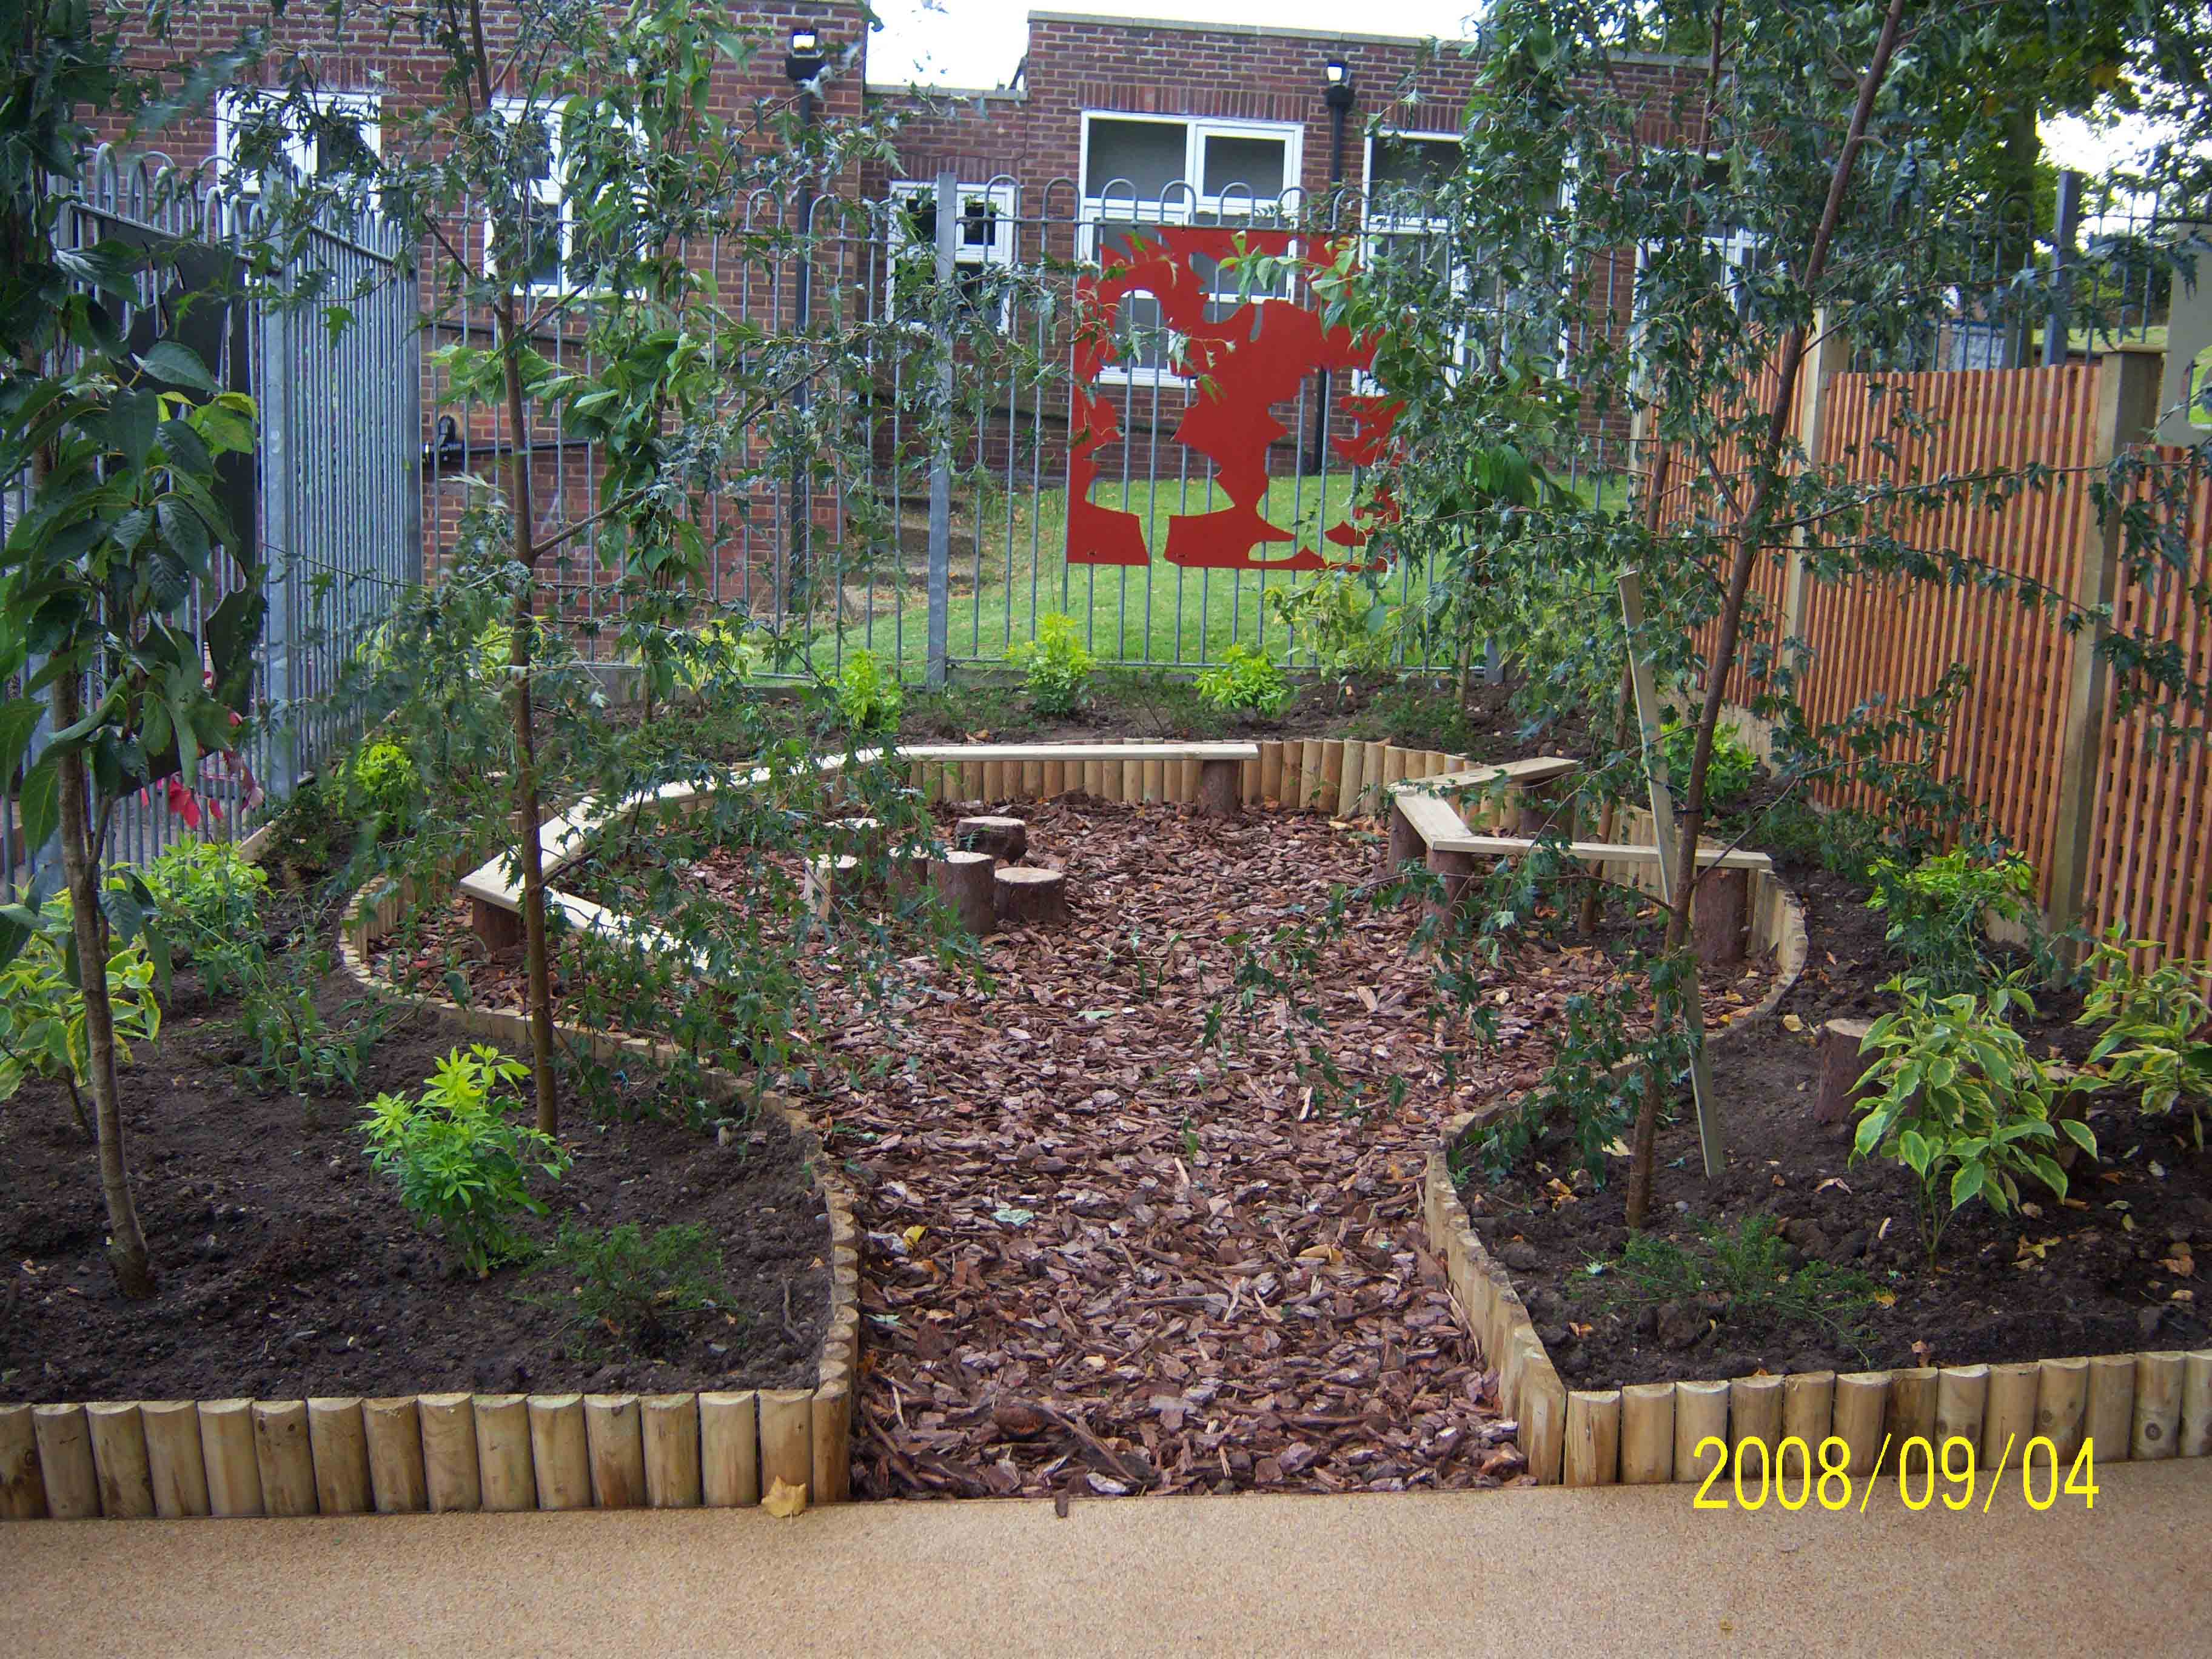 View into the Northbury school garden areas